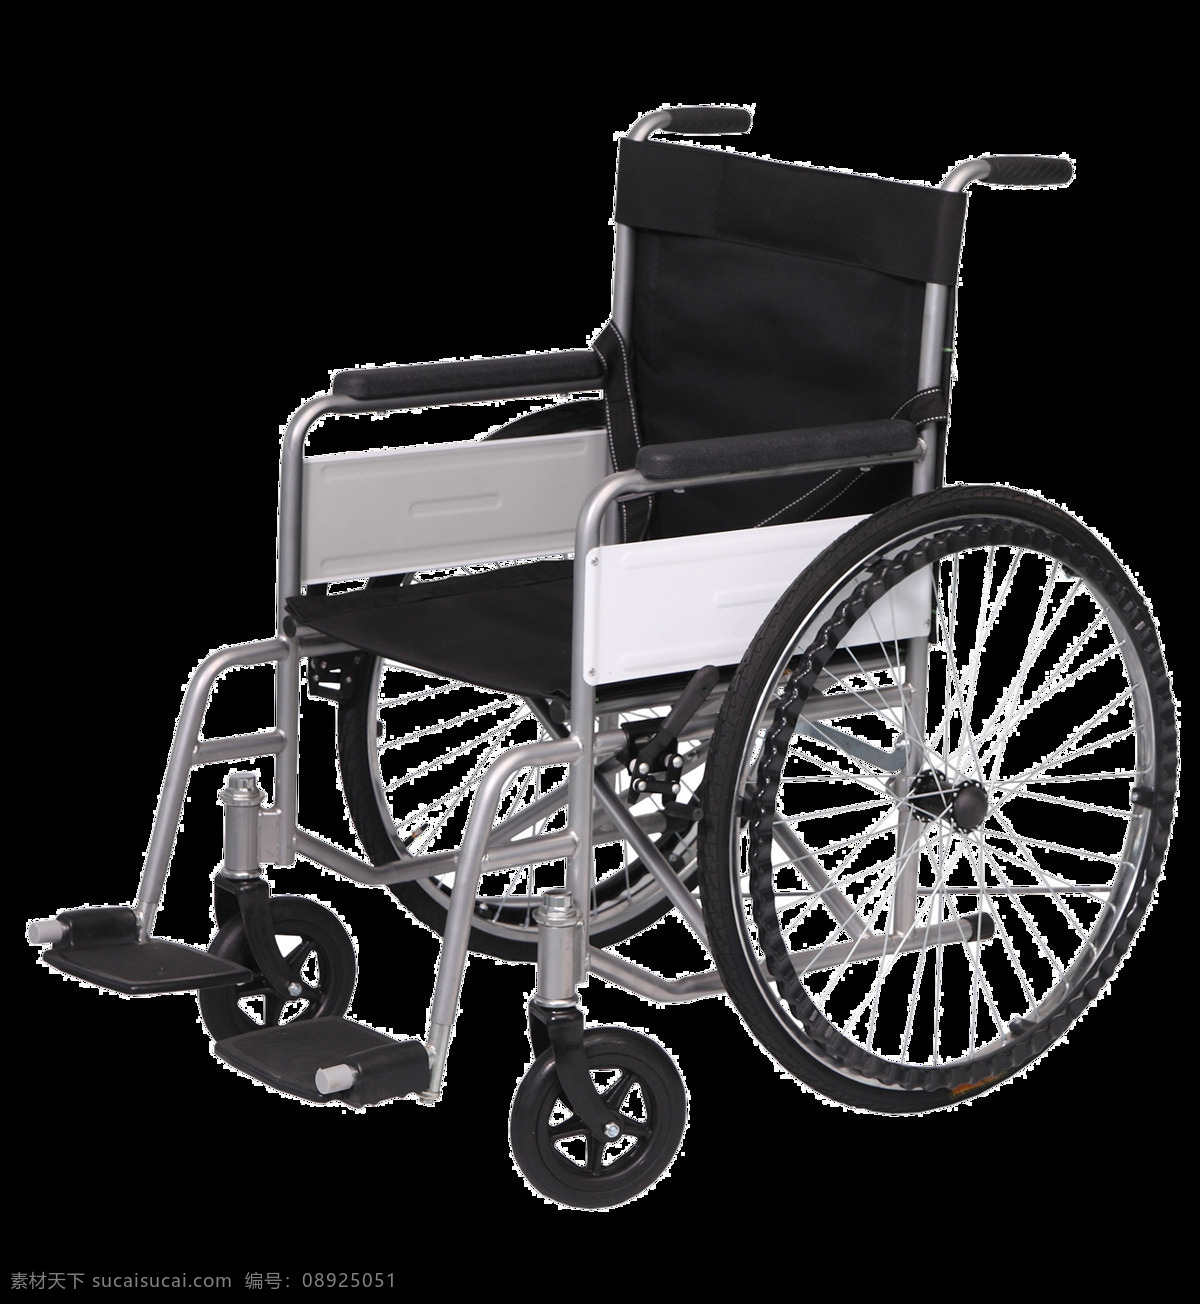 越野 轮椅 免 抠 透明 图 层 木轮椅 越野轮椅 小轮轮椅 手摇轮椅 轮椅轮子 车载轮椅 老年轮椅 竞速轮椅 轮椅设计 残疾轮椅 折叠轮椅 智能轮椅 医院轮椅 轮椅图片